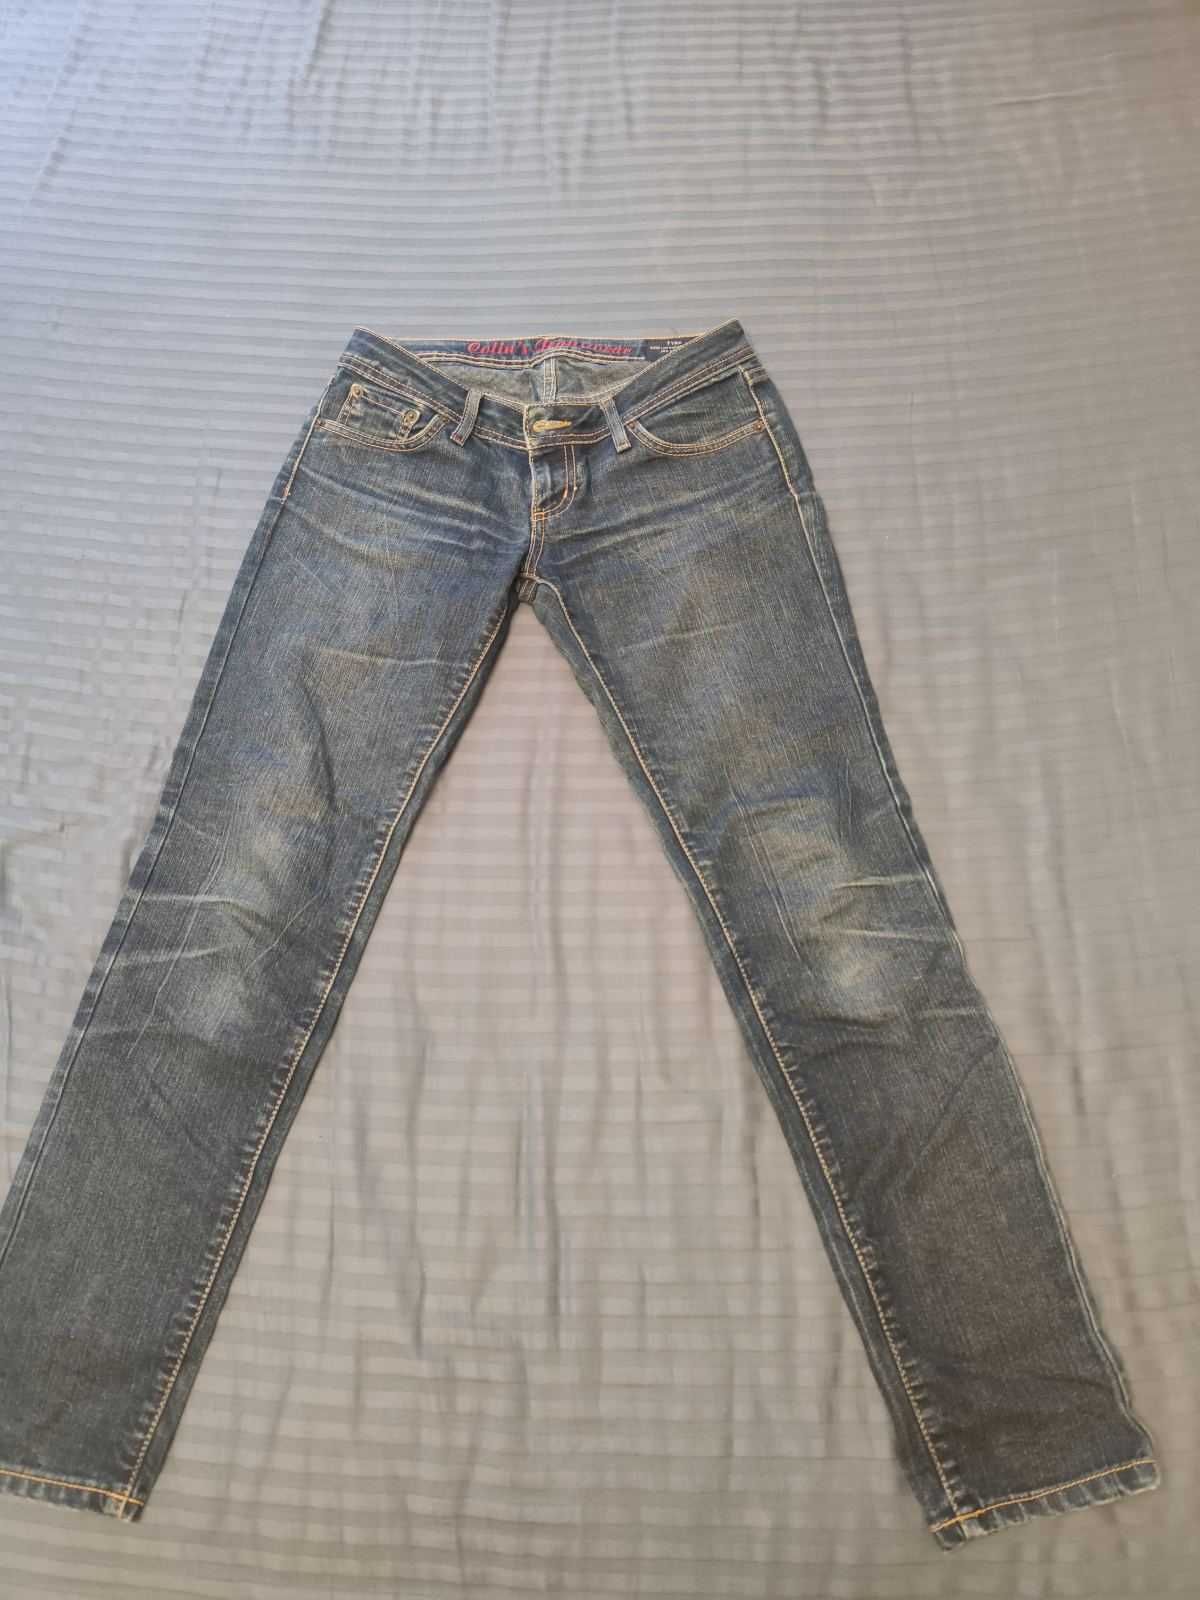 Женские джинсы Colins, заниженная талия, размер по бирке 27 (наш 34)